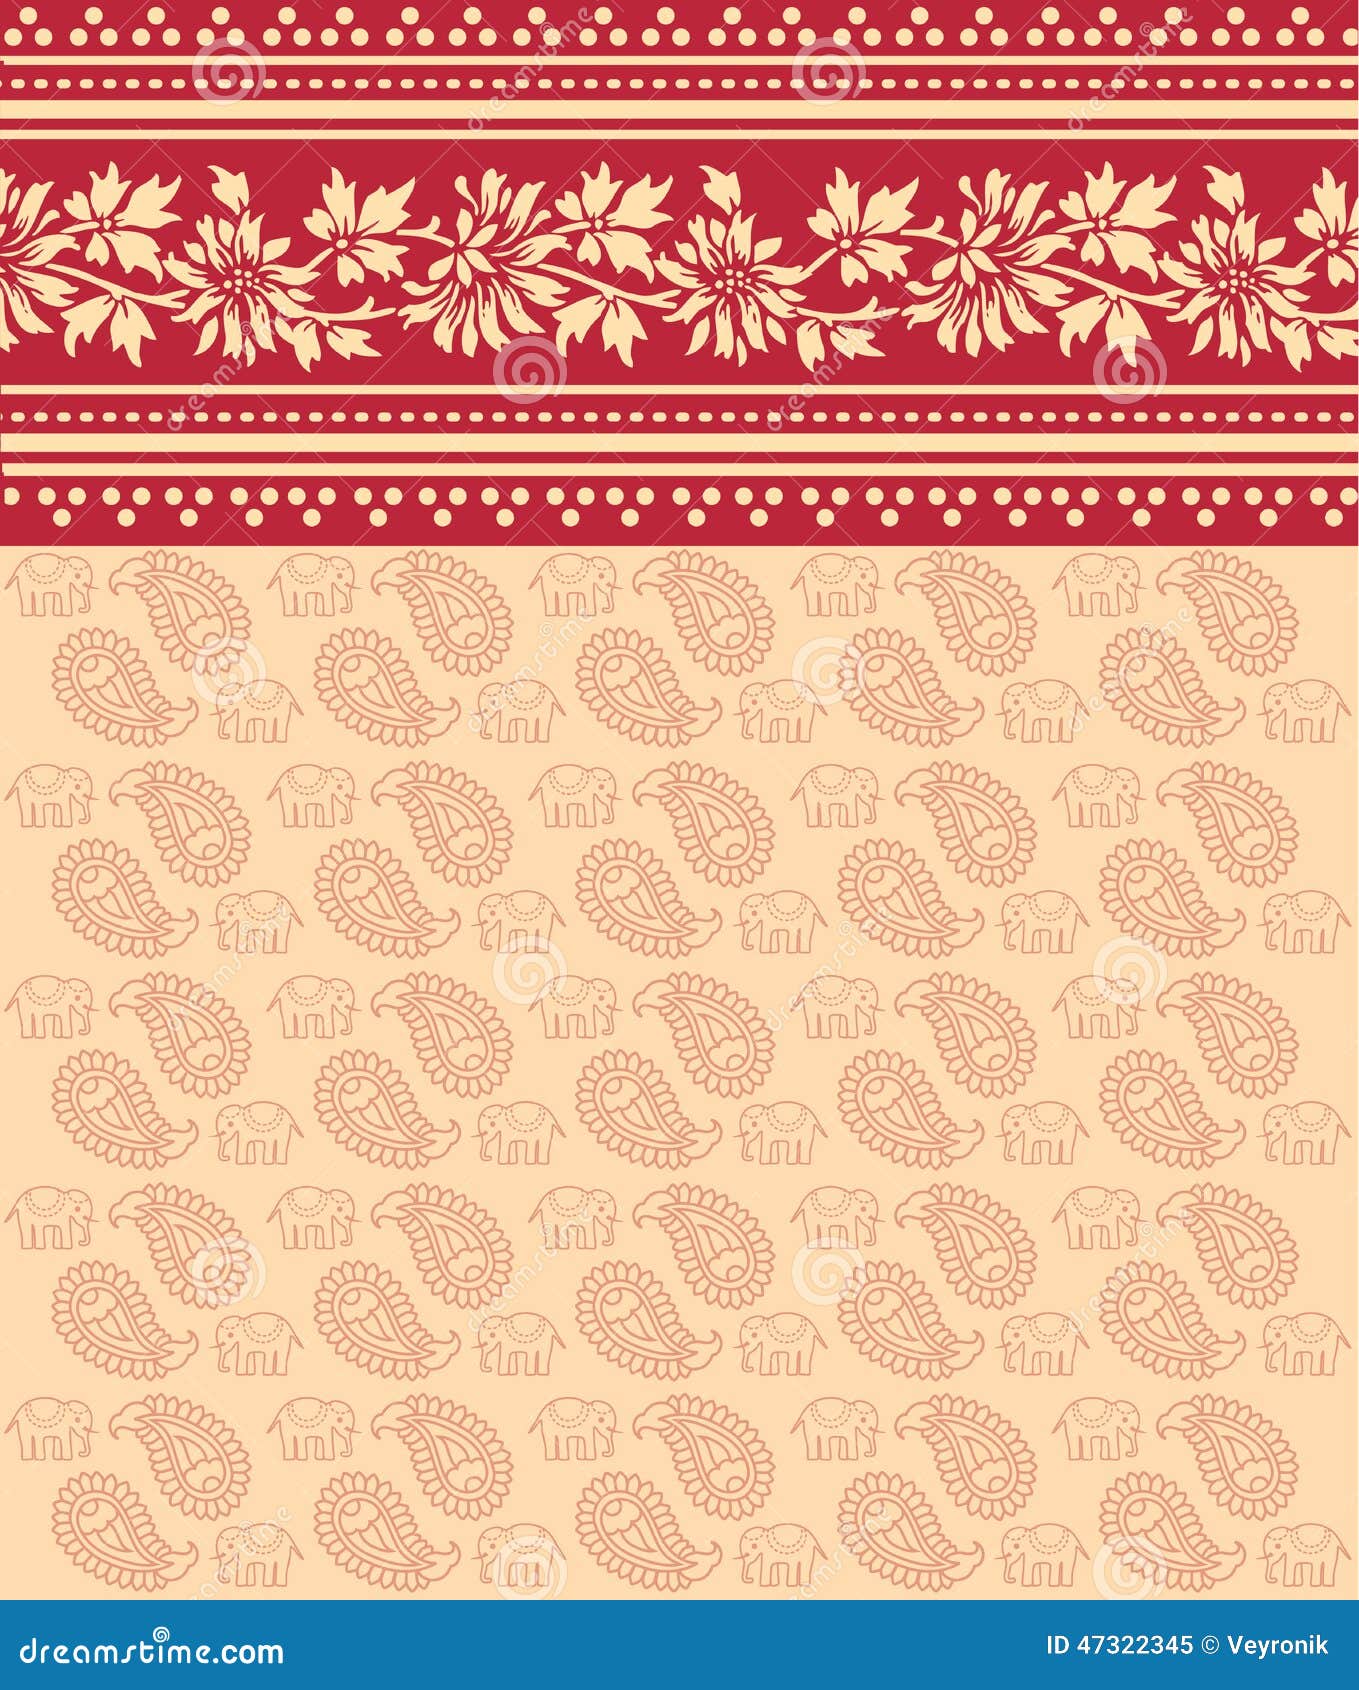 Red And Cream Floral Saree Design Illustration 47322345 - Megapixl